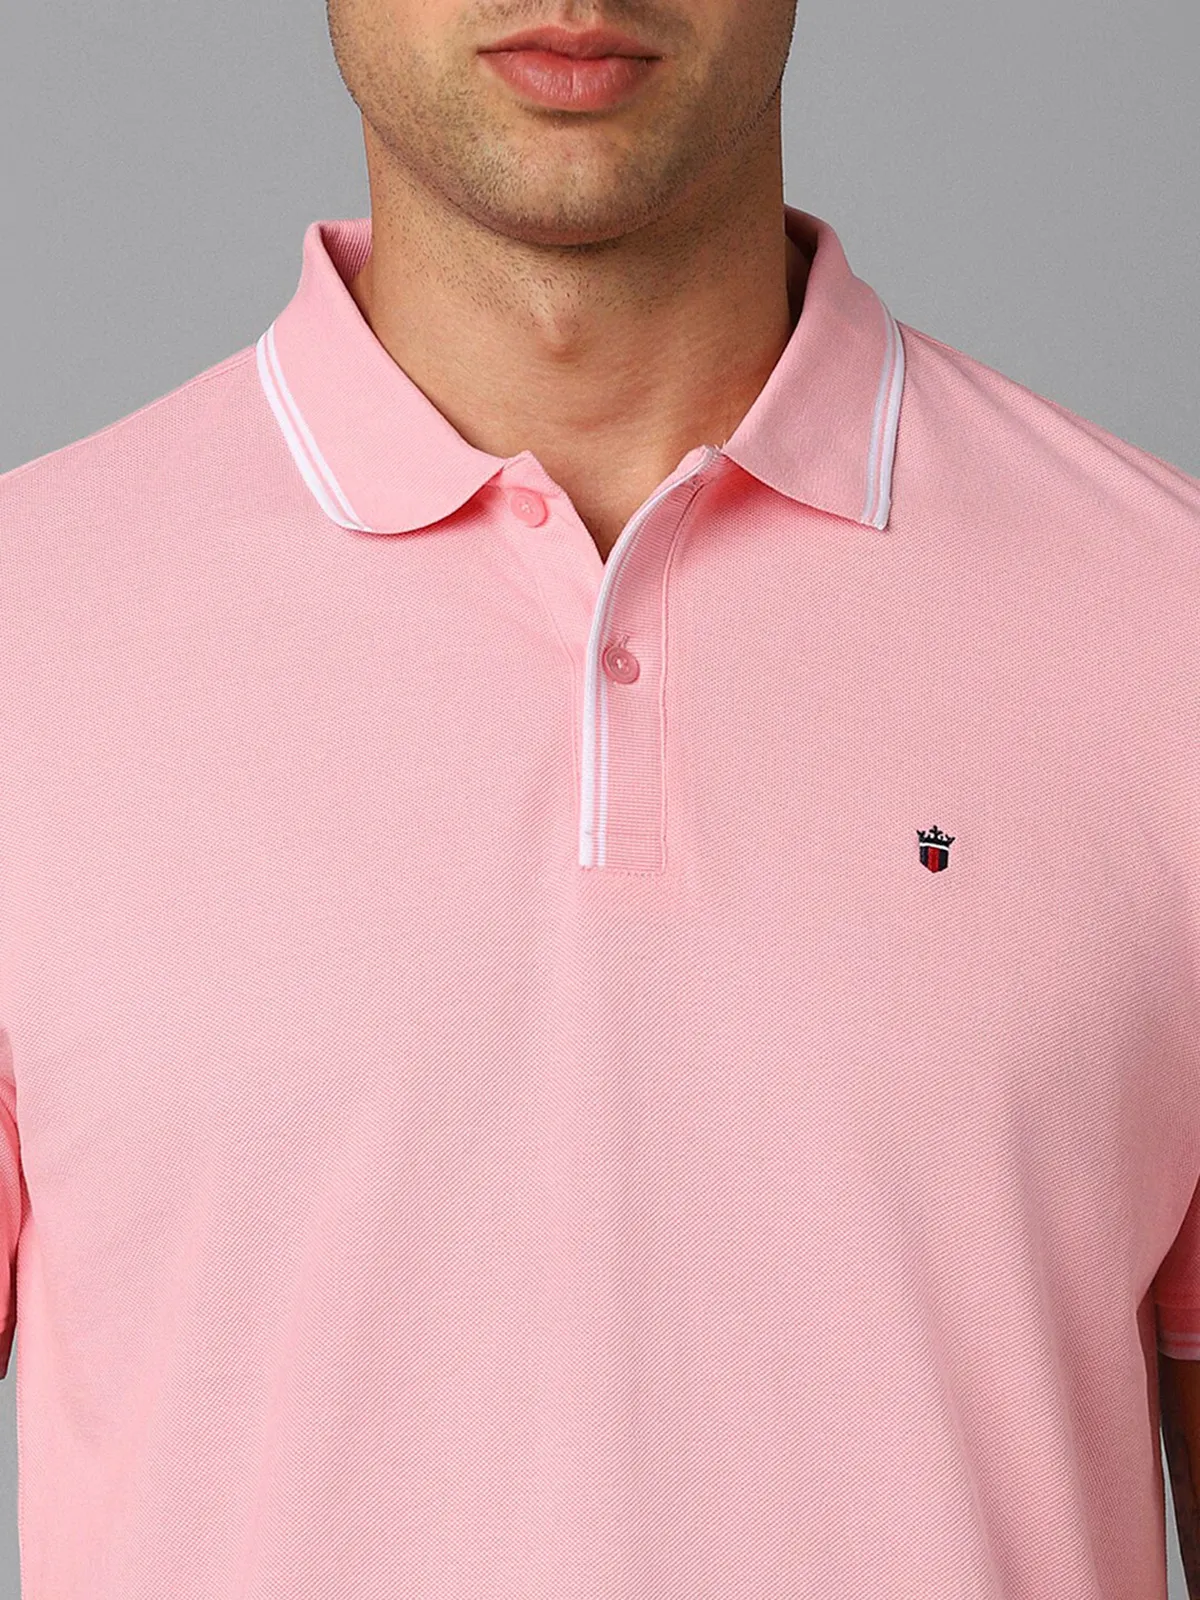 LP pink plain cotton t-shirt